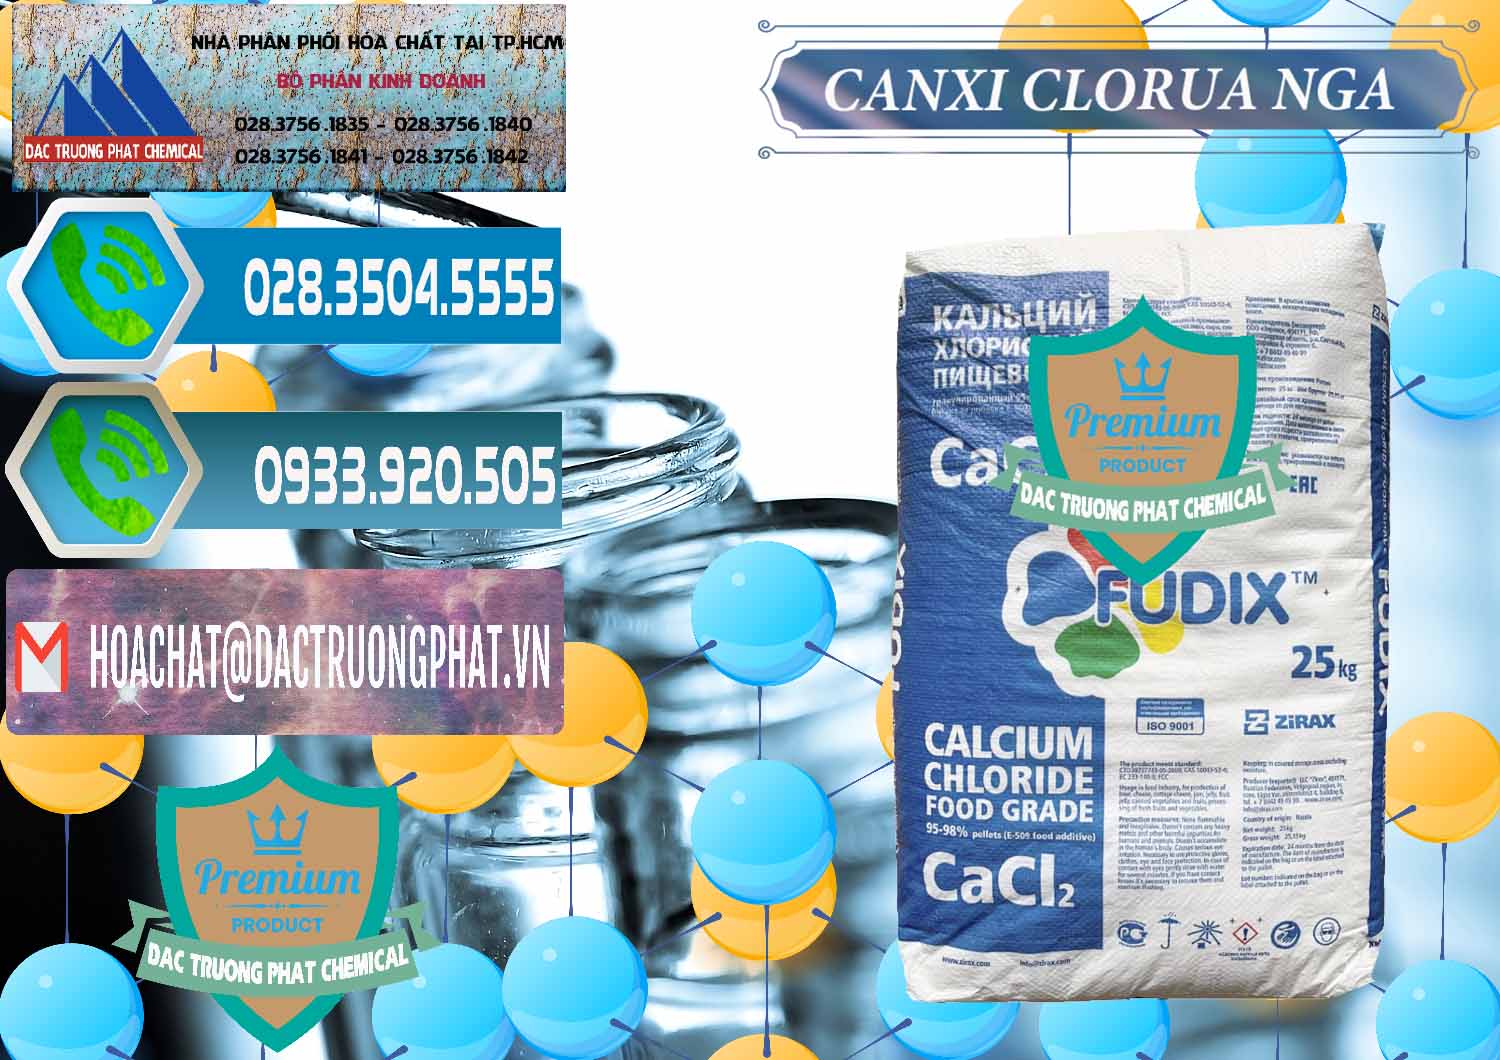 Nơi kinh doanh & bán CaCl2 – Canxi Clorua Nga Russia - 0430 - Cung cấp _ kinh doanh hóa chất tại TP.HCM - congtyhoachat.net